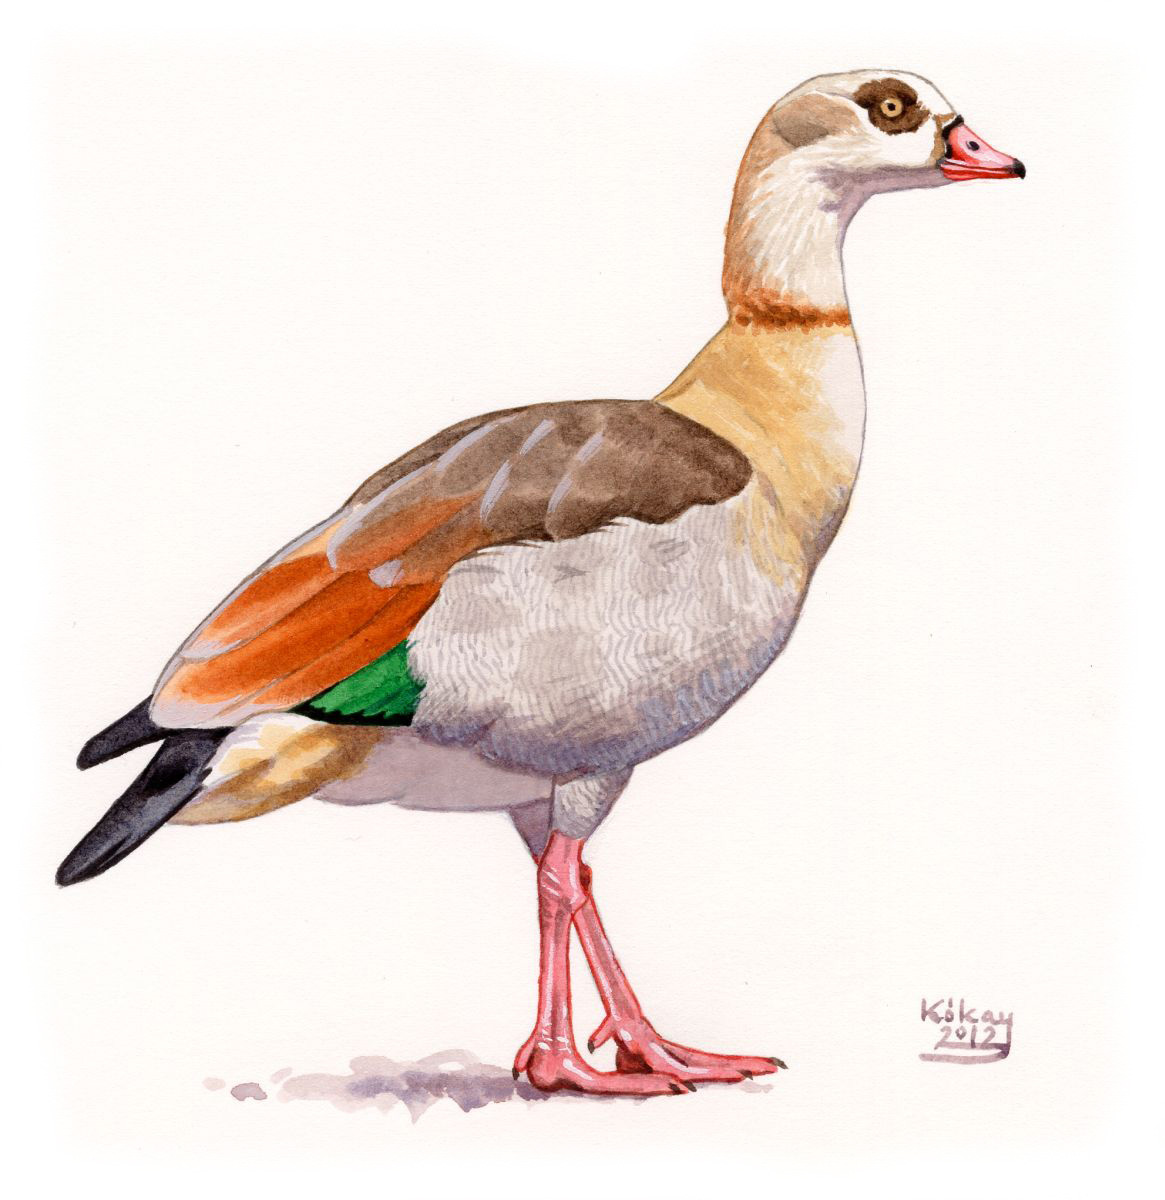 Egyptian Goose (Alopochen aegyptiaca), watercolour and bodycolour on paper